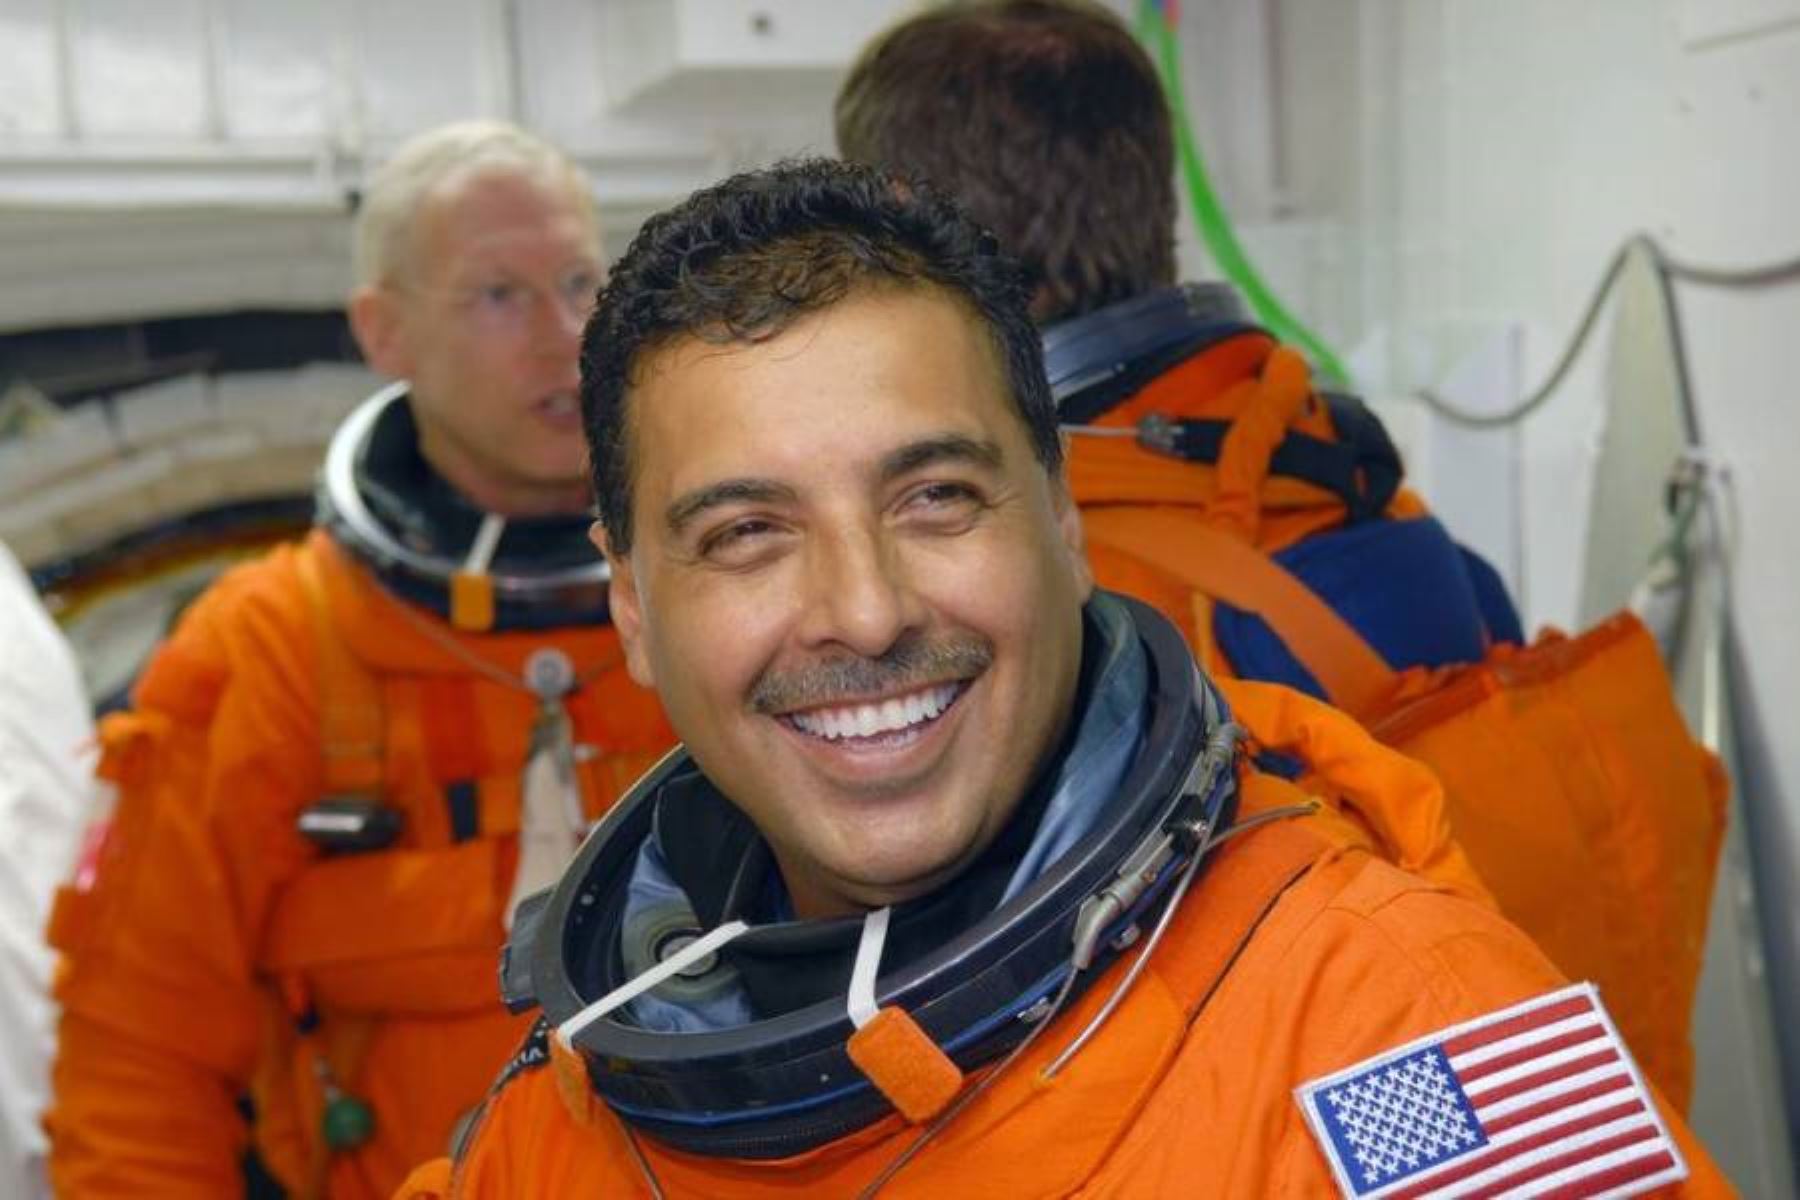 El astronauta mexicano participó en la misión STS-128 en la Estación Espacial Internacional el año 2009. Foto: NASA